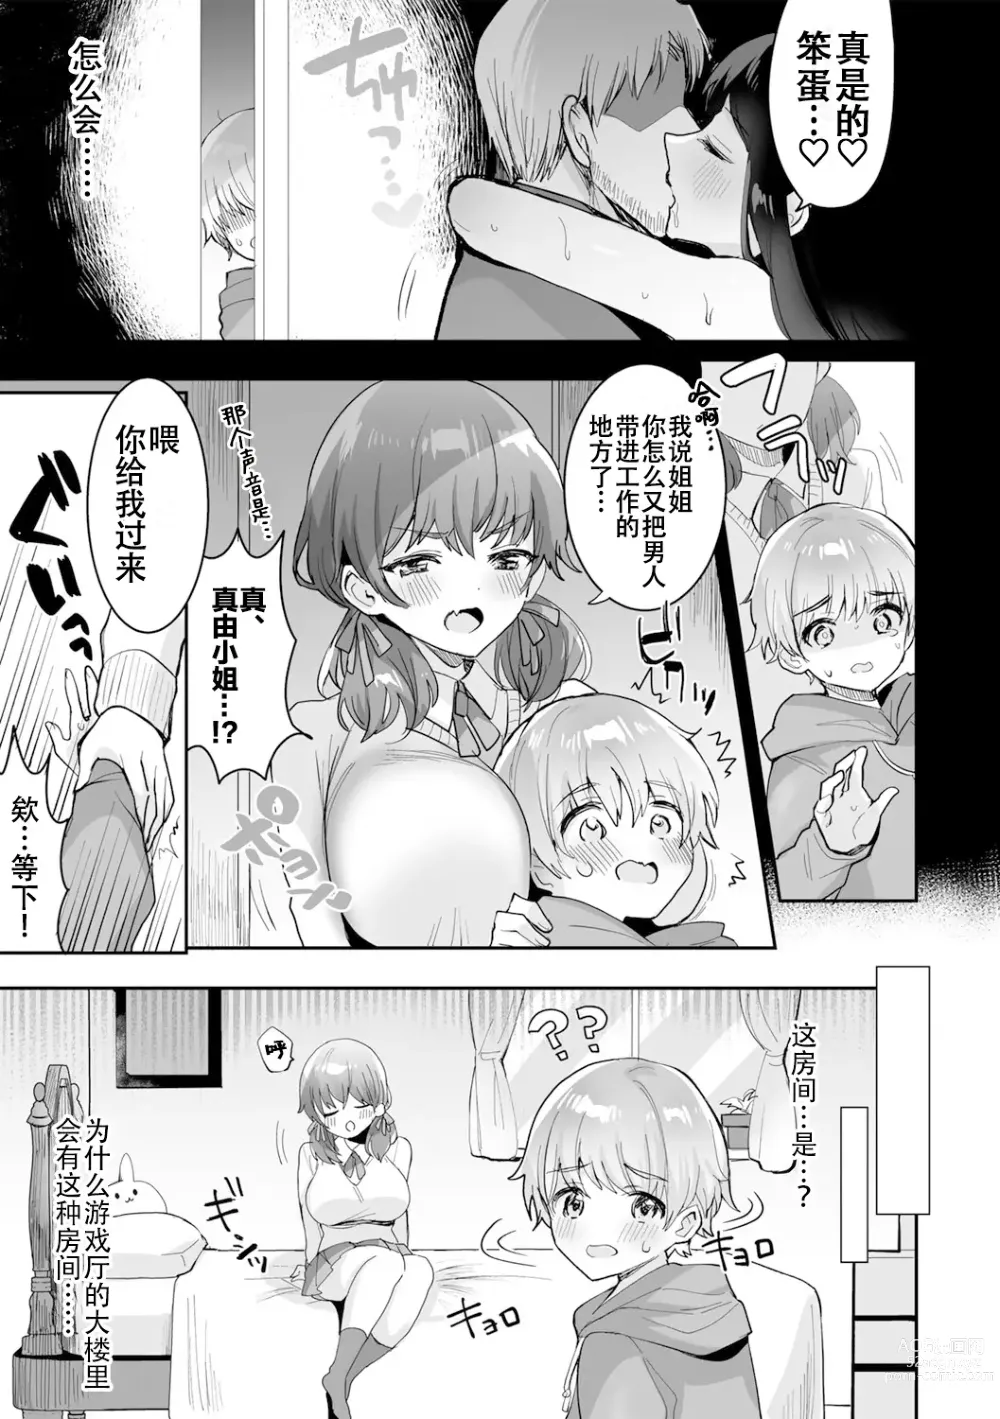 Page 7 of manga 游戏结束！~杂鱼正太君与雌小鬼小姐~